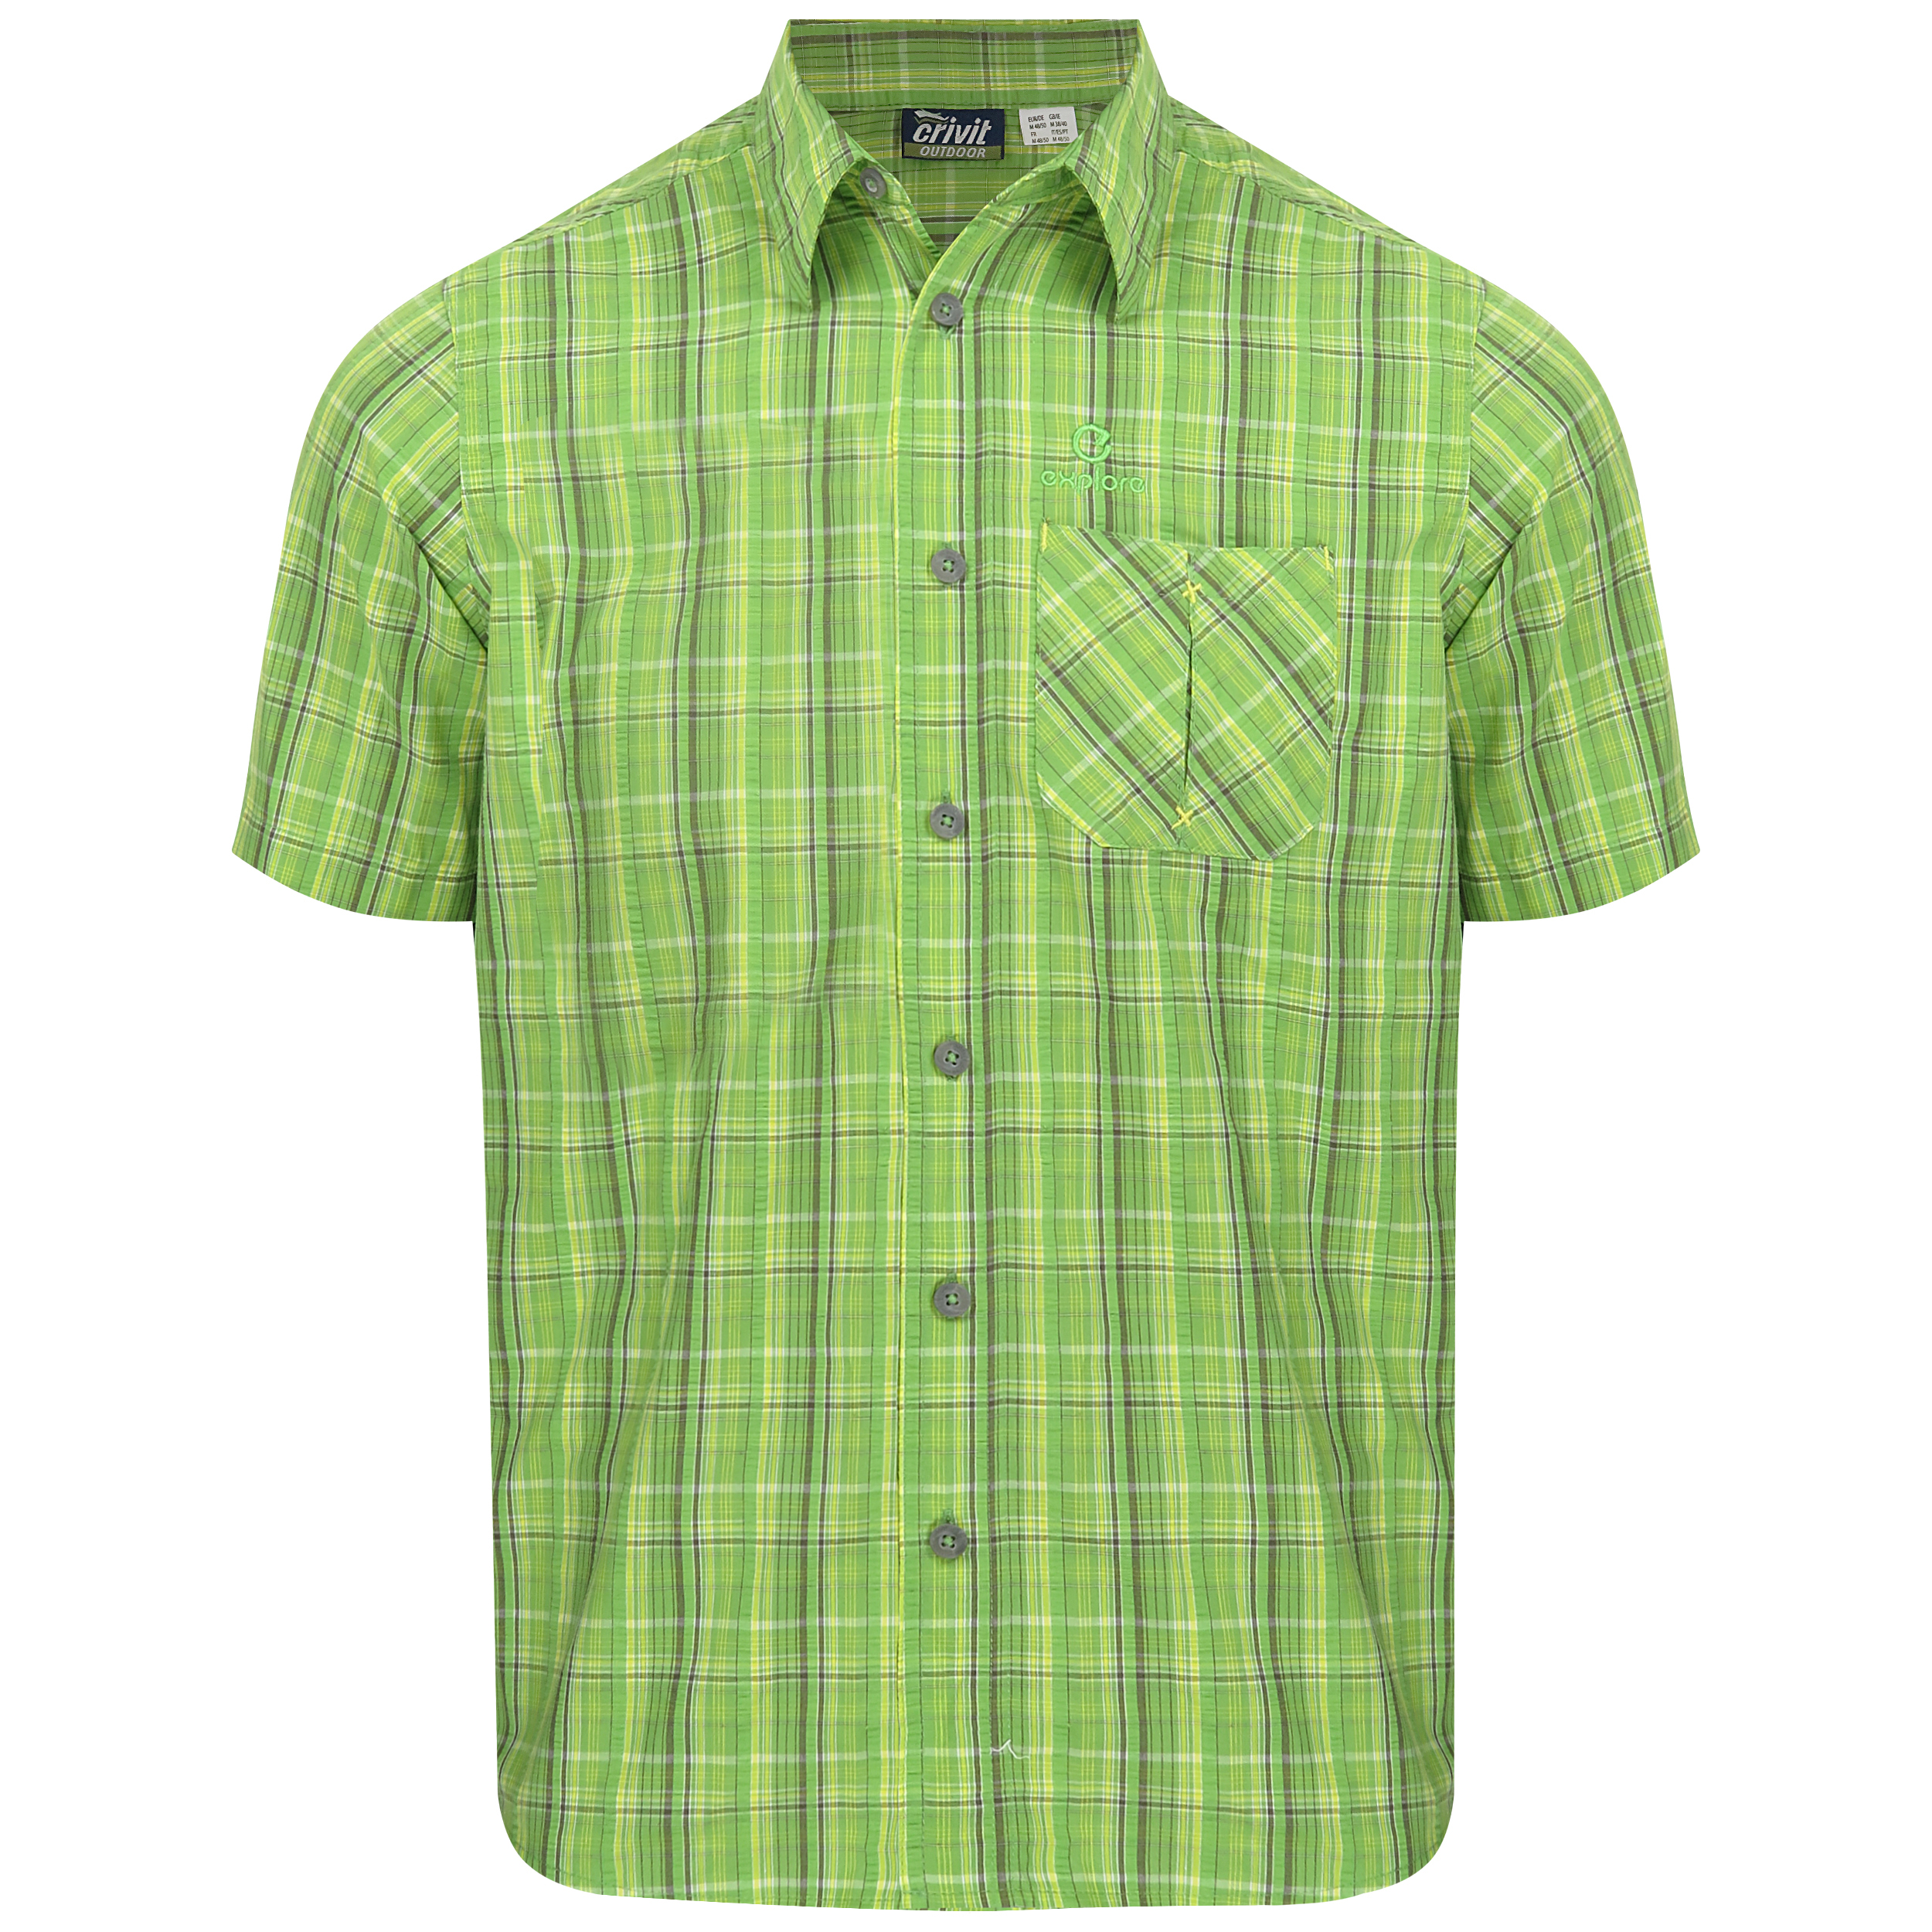 نکته خرید - قیمت روز پیراهن آستین کوتاه مردانه مدل E14 خرید